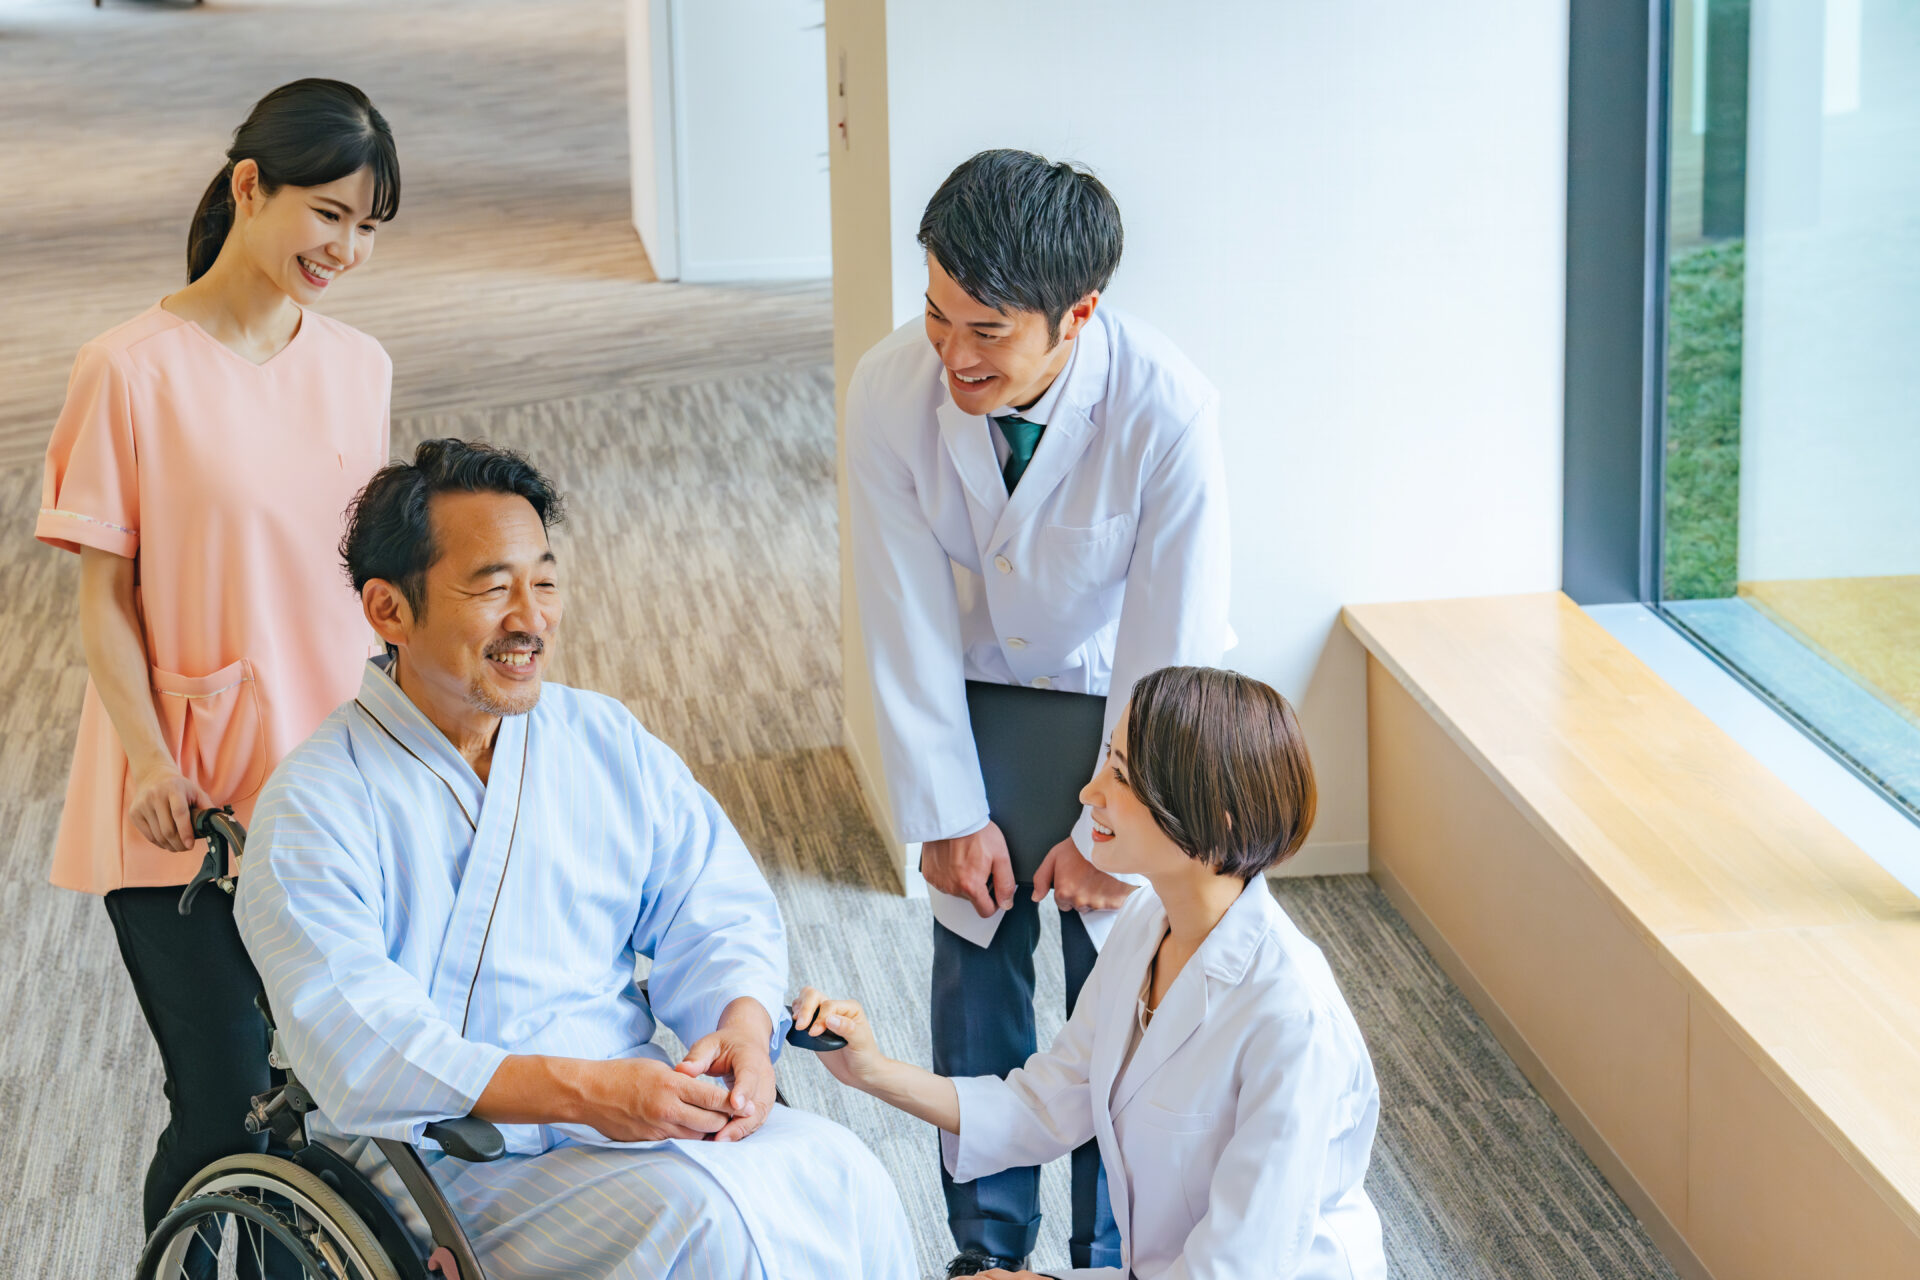 【画像】車椅子のシニア男性患者と会話する医師